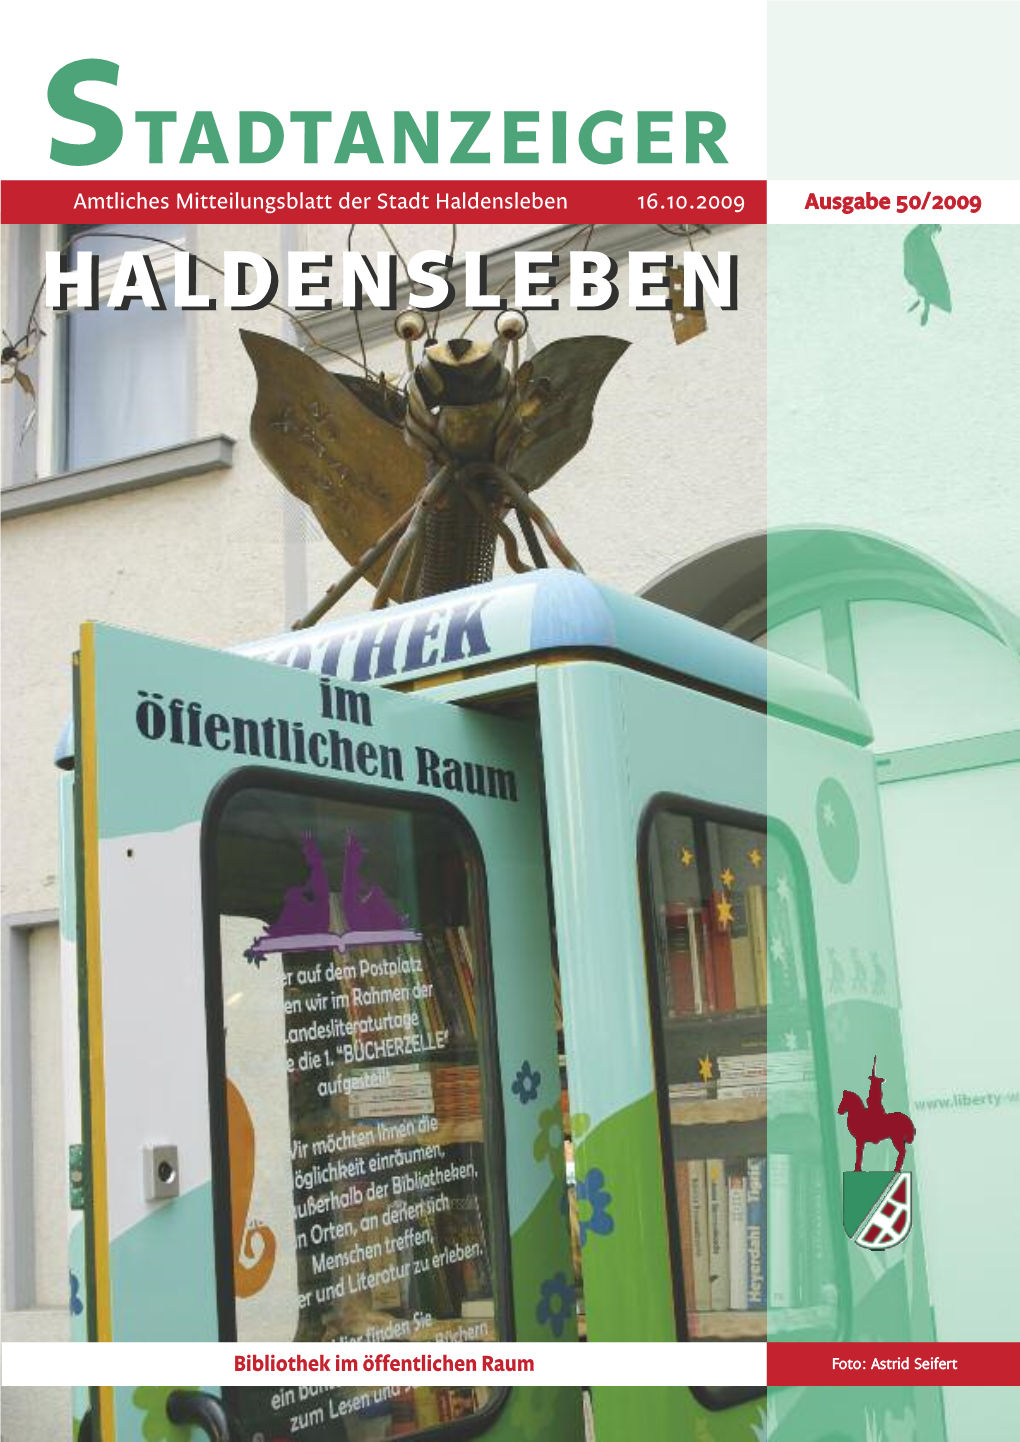 STADTANZEIGER Amtliches Mitteilungsblatt Der Stadt Haldensleben 16.10.2009 Ausgabe 50/2009 HHAALLDDEENNSSLLEEBBEENN